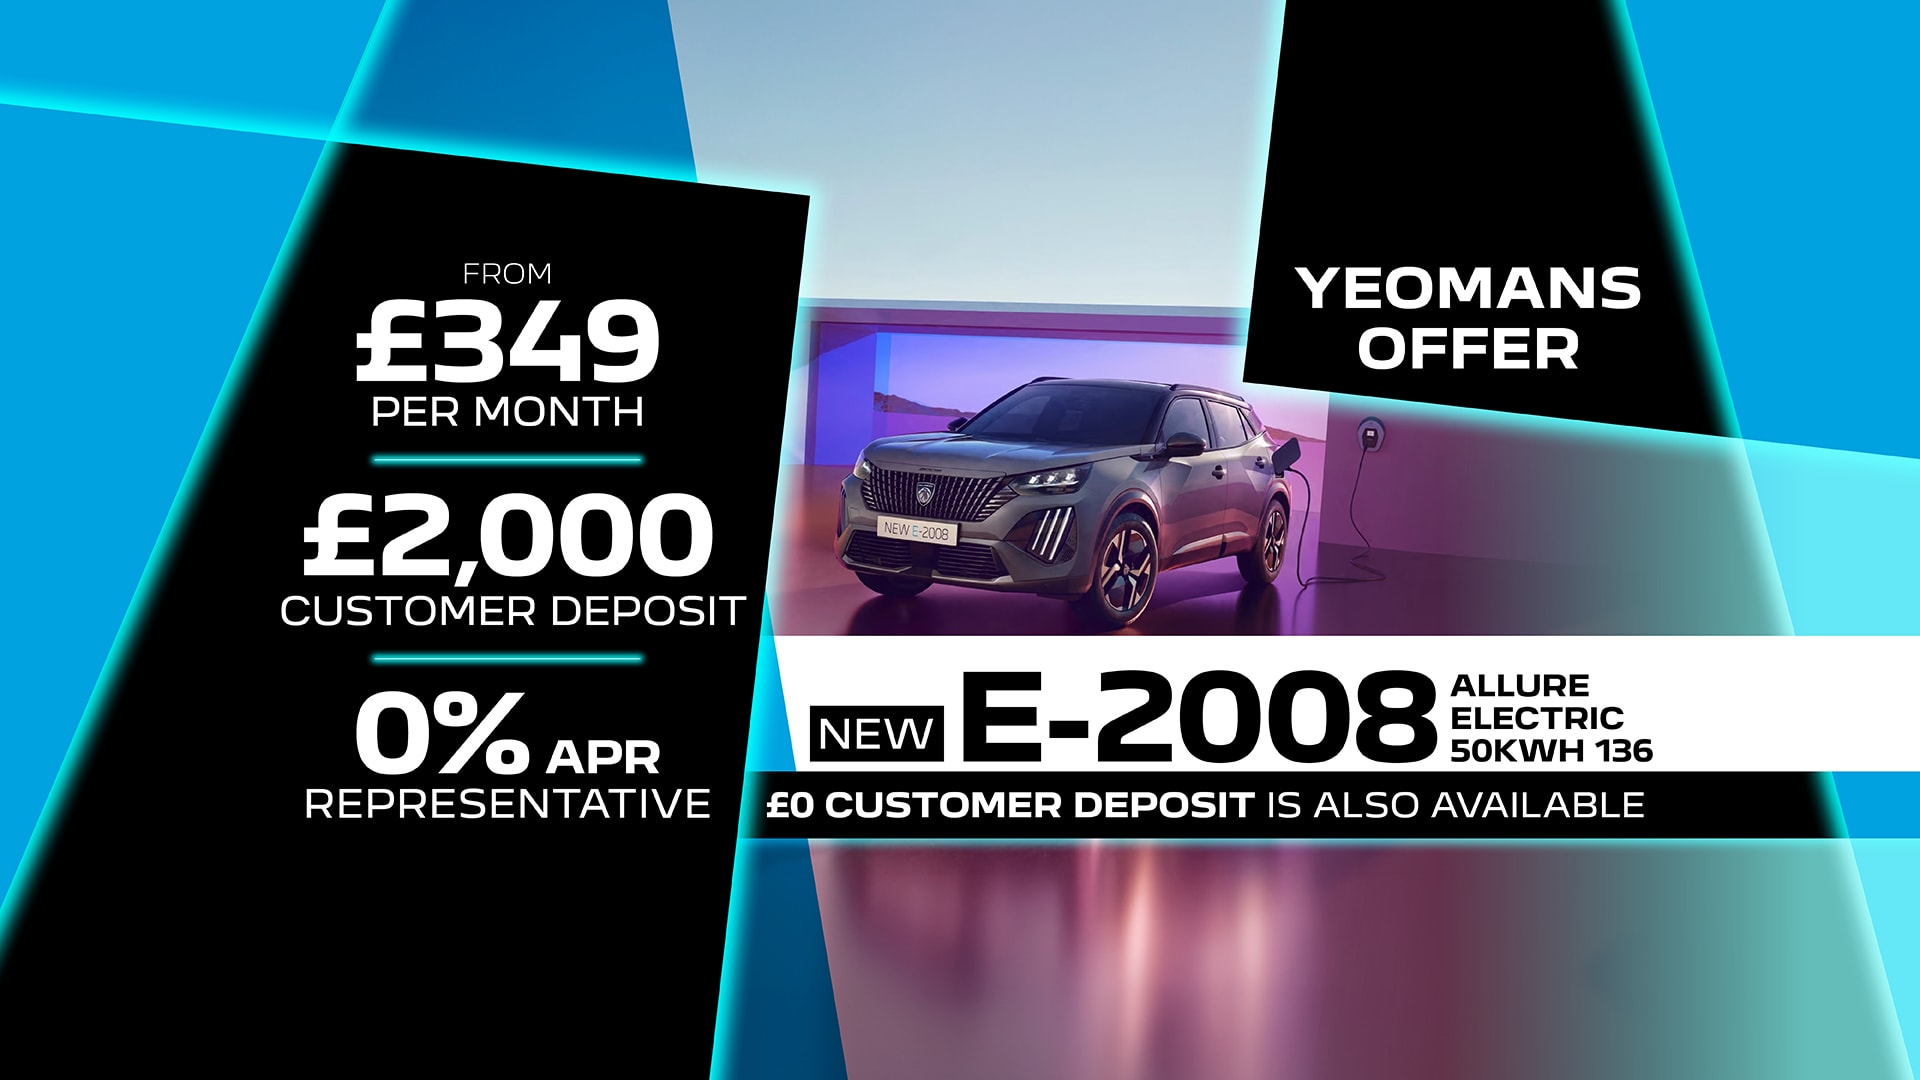 Yeomans Offer - Peugeot E-2008